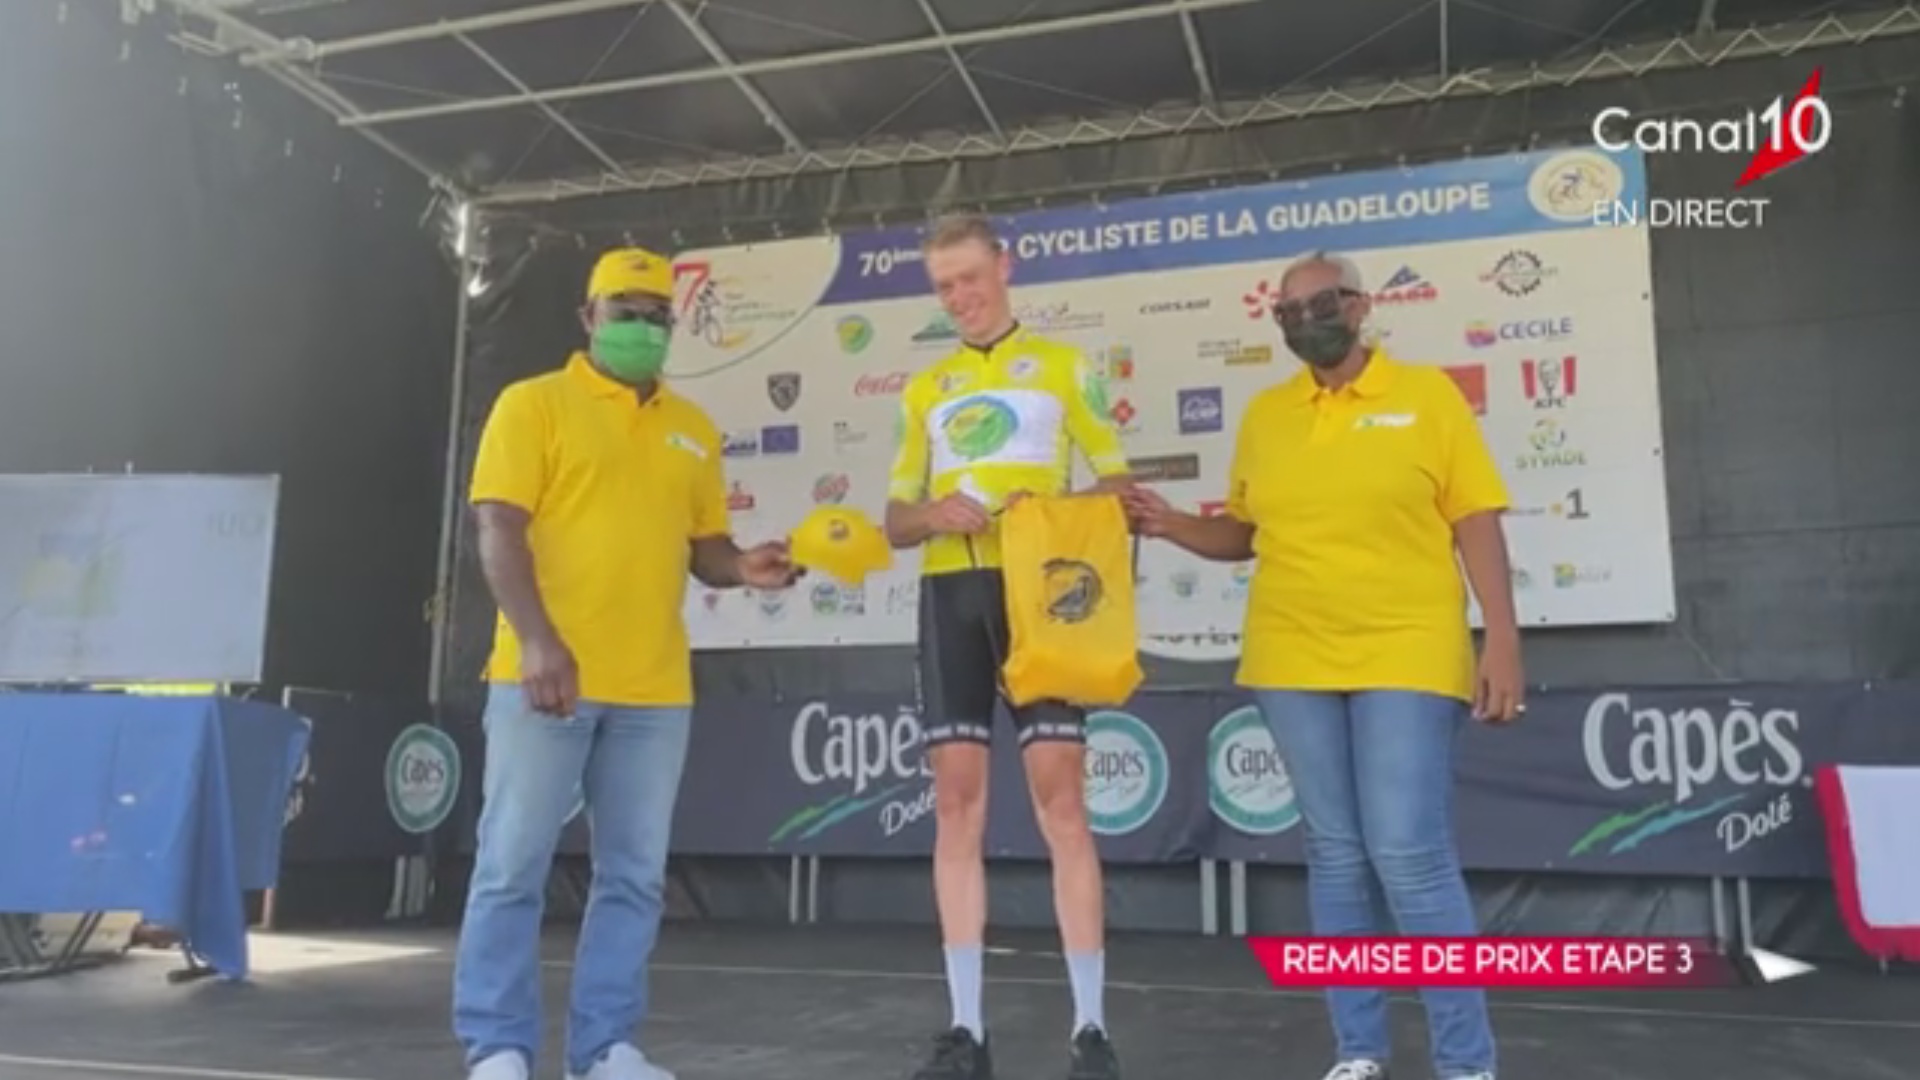 [Vidéo] Tzortzakis Polychronis (Kuwait Pro)remporte la 3e étape du Tour de la Guadeloupe